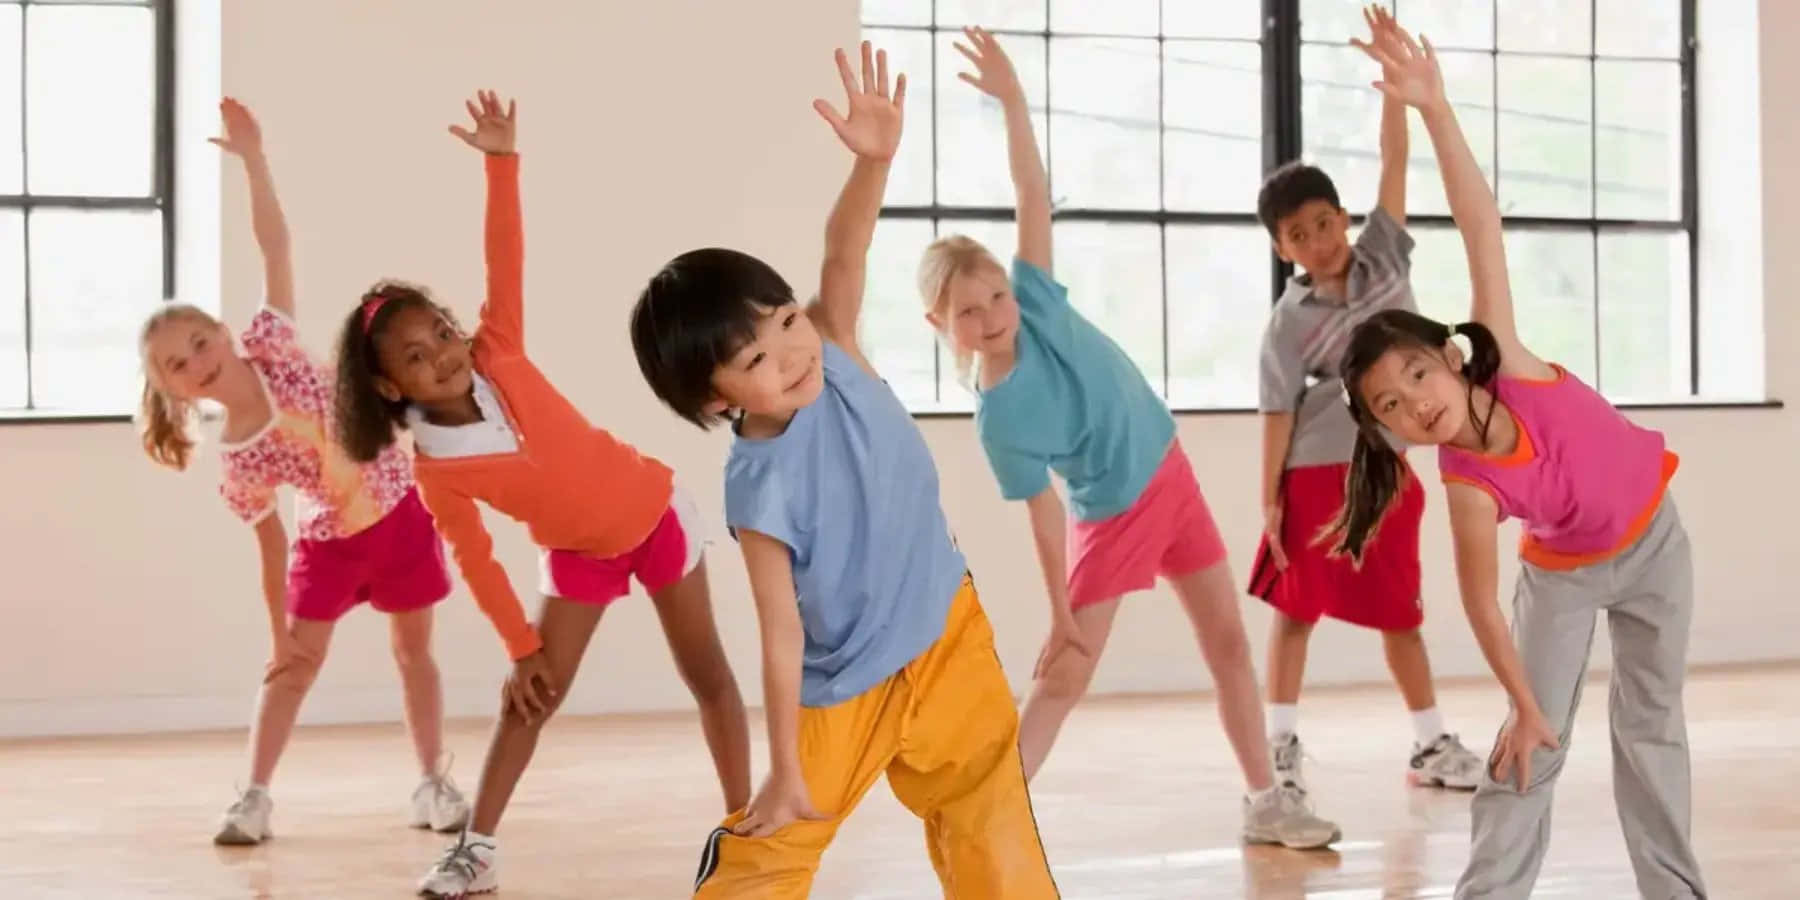 Kids Dance Practice Fun Pictures